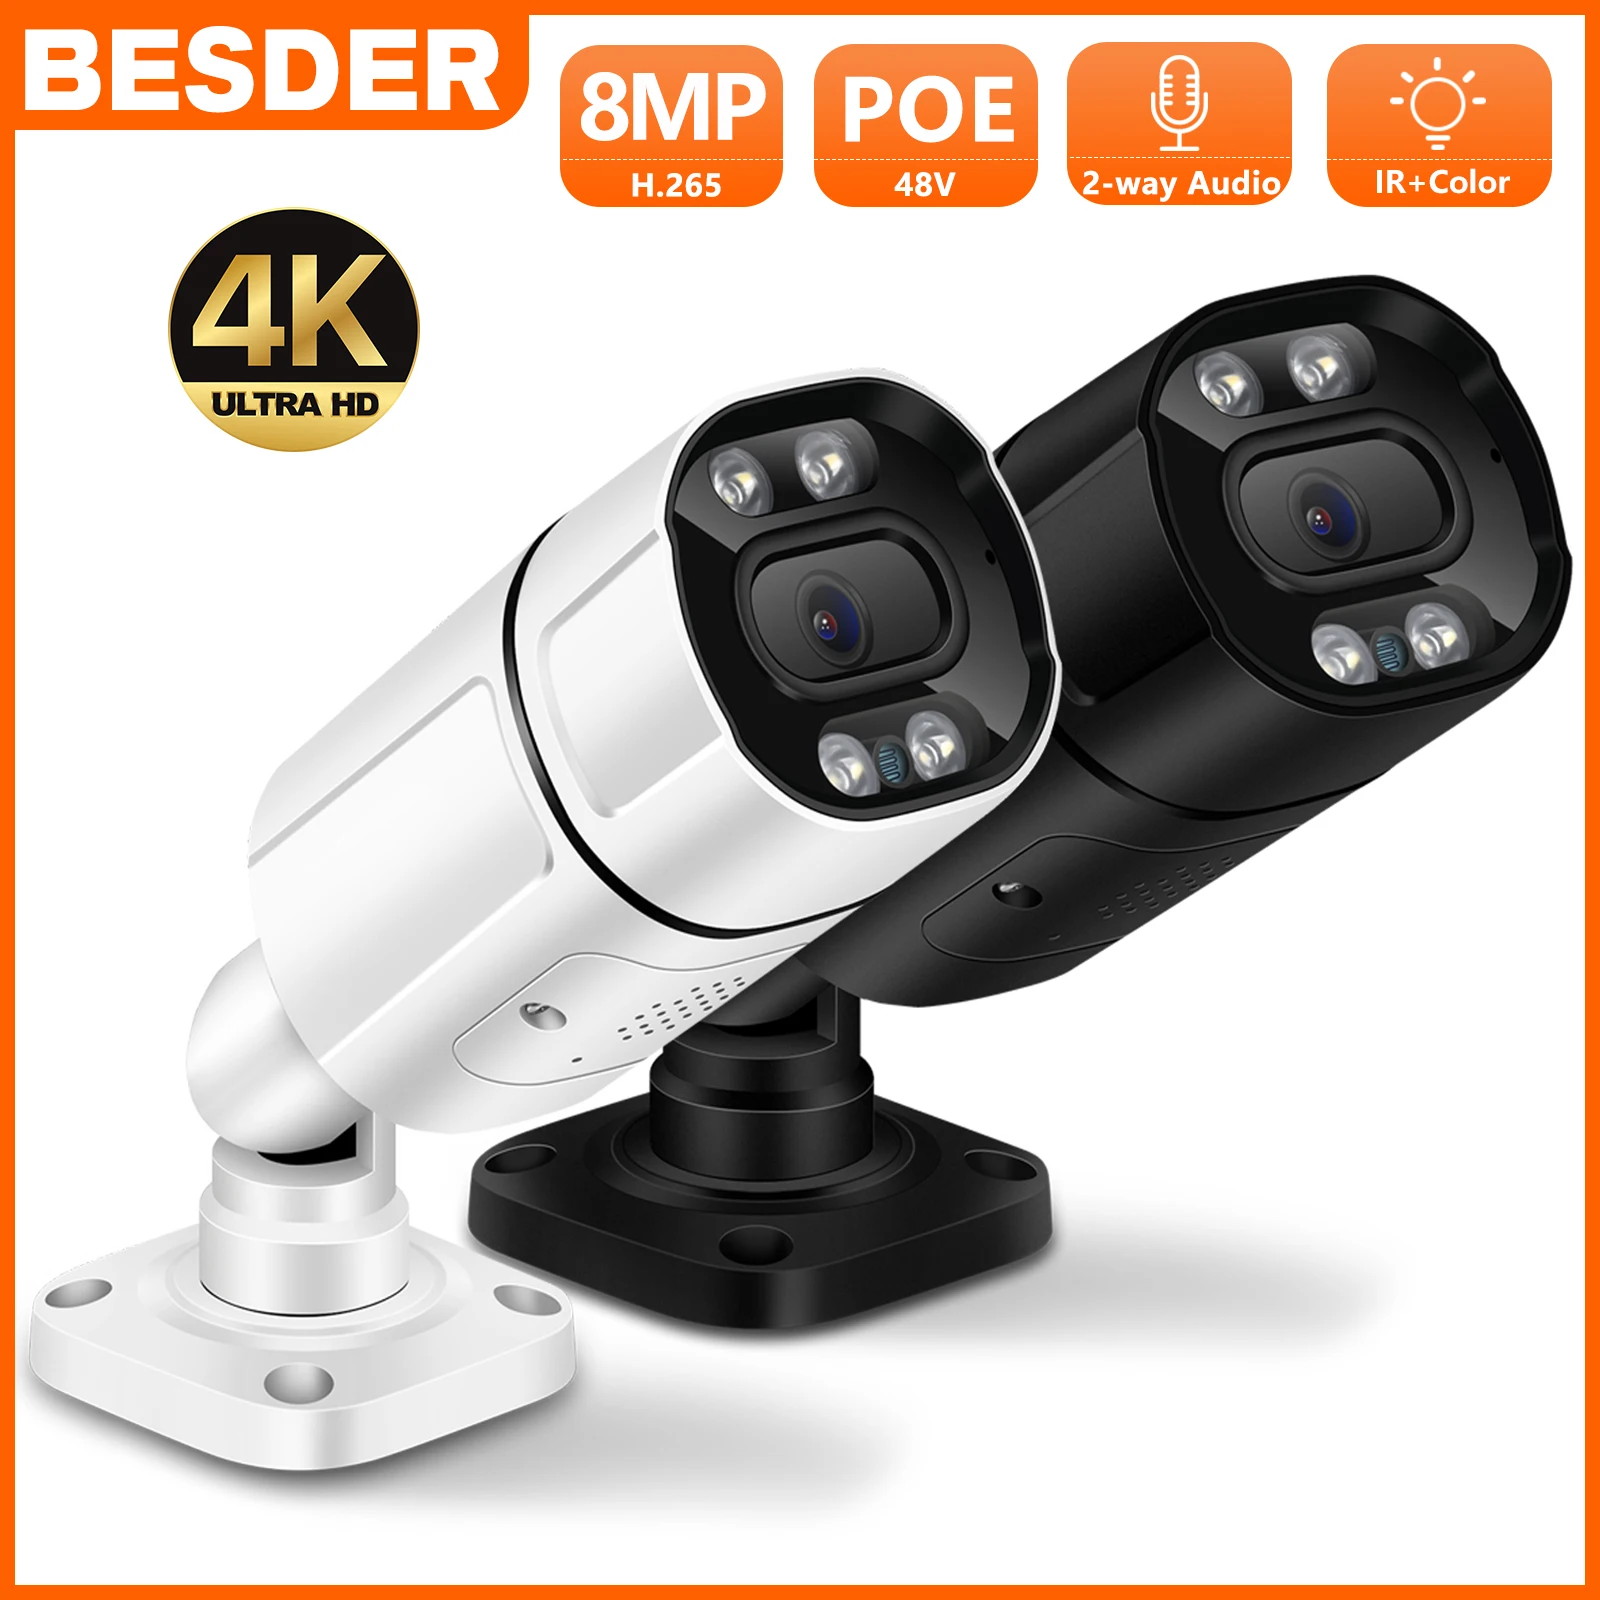 BESDER 4K 8MP POE IP-Kaamera H. 265 4MP Väljas Traadiga Bullet Kaamera Ai Humanoid liikumistuvastus IR P2P kahesuunaline Audio Alarm Kaamera